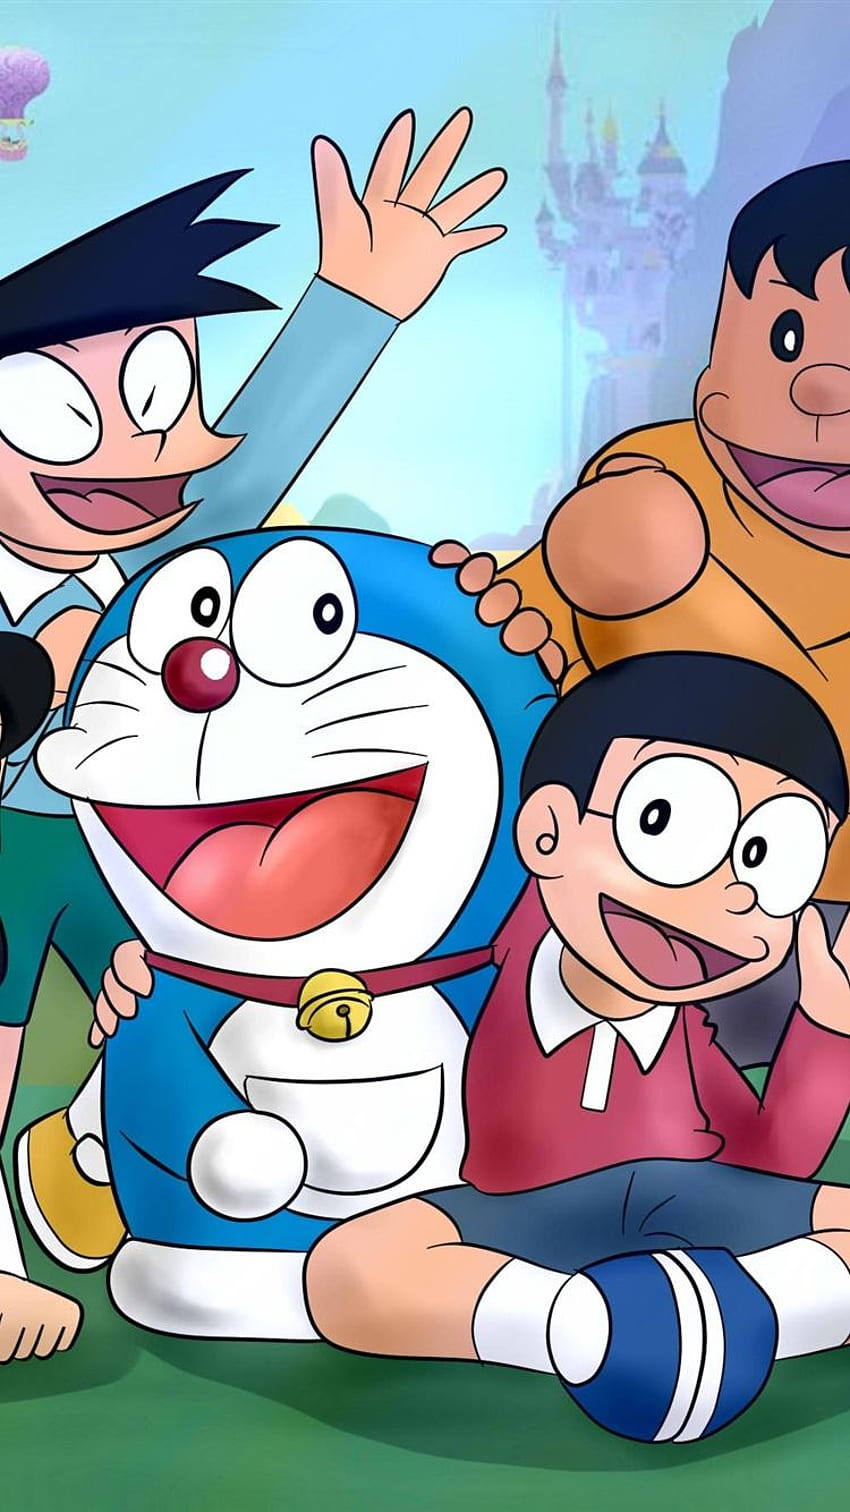 Download Cute Doraemon Royal Space Wallpaper | Wallpapers.com